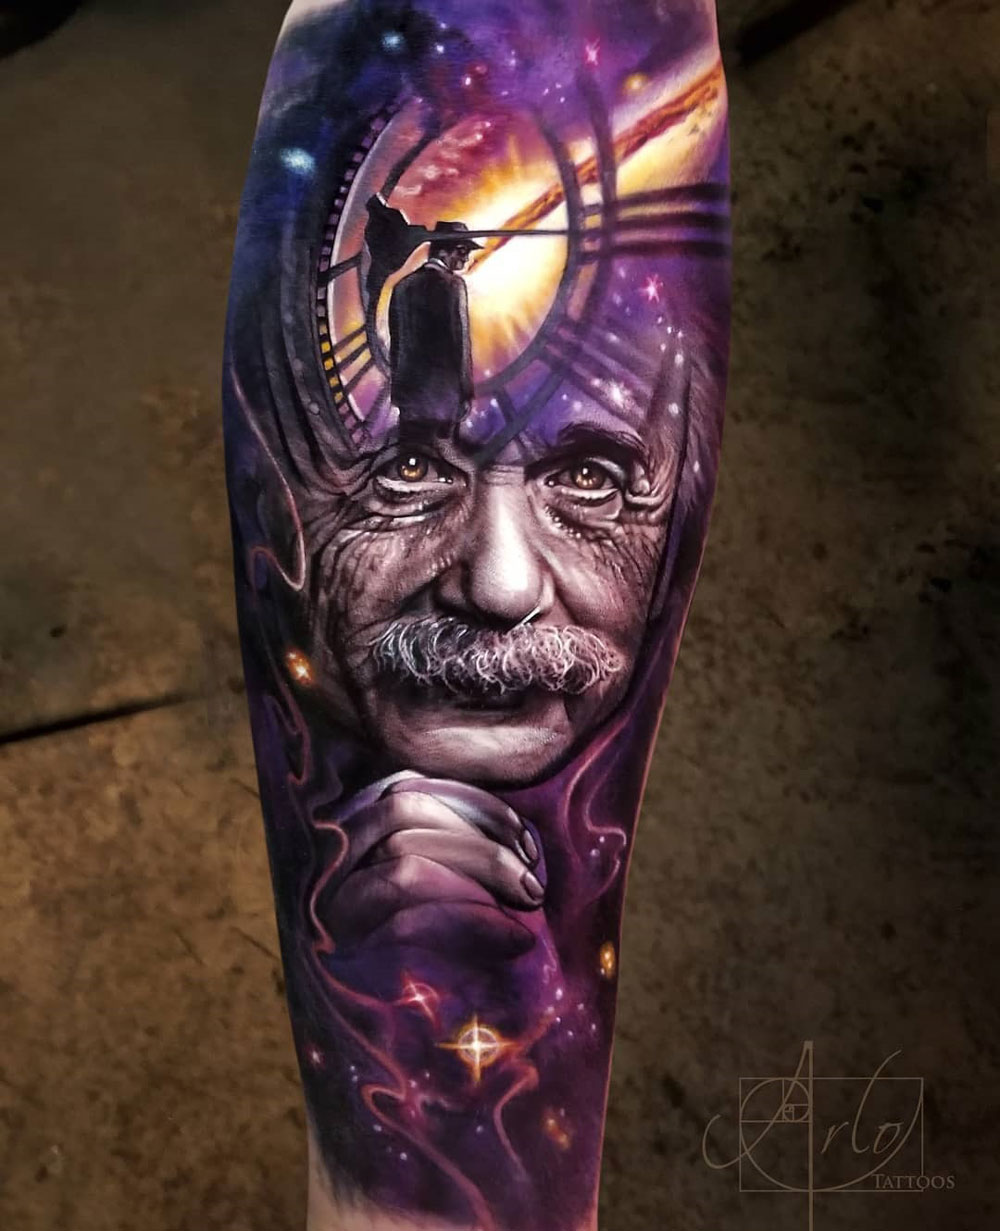 Albert Einstein portrait tattoo